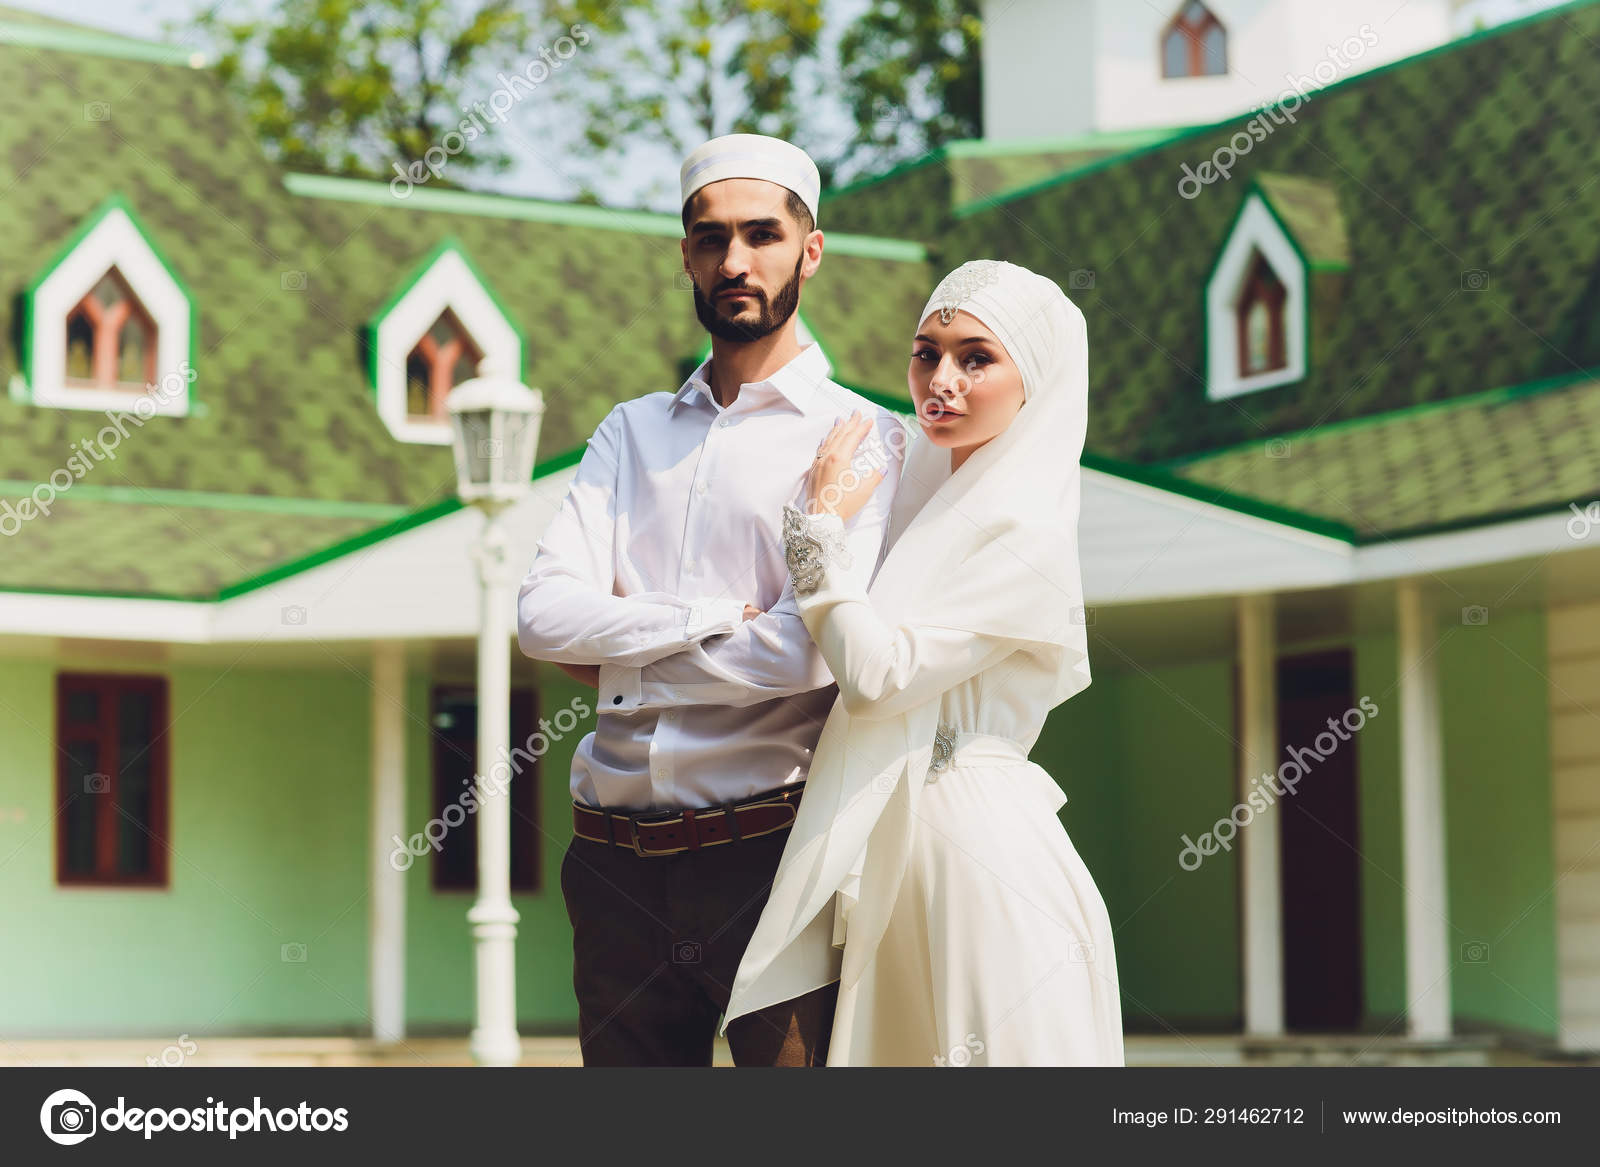 Nationalt bryllup. brudgom. Bryllup muslimske ægteskabet ceremoni. Muslimsk ægteskab. — Stock-foto © vershinin.photo #291462712